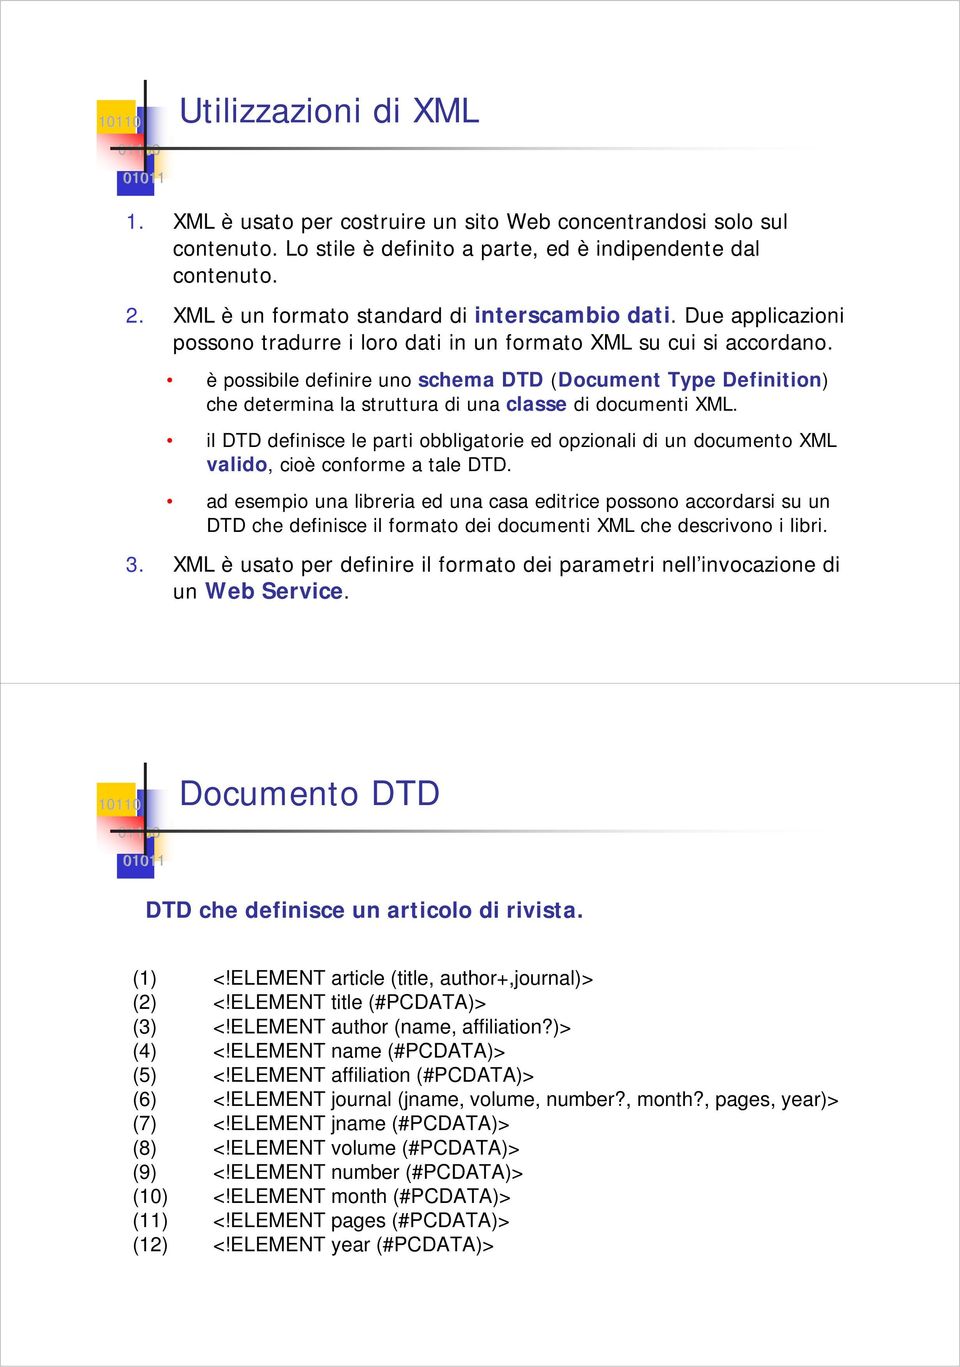 è possibile definire uno schema DTD (Document Type Definition) che determina la struttura di una classe di documenti XML.